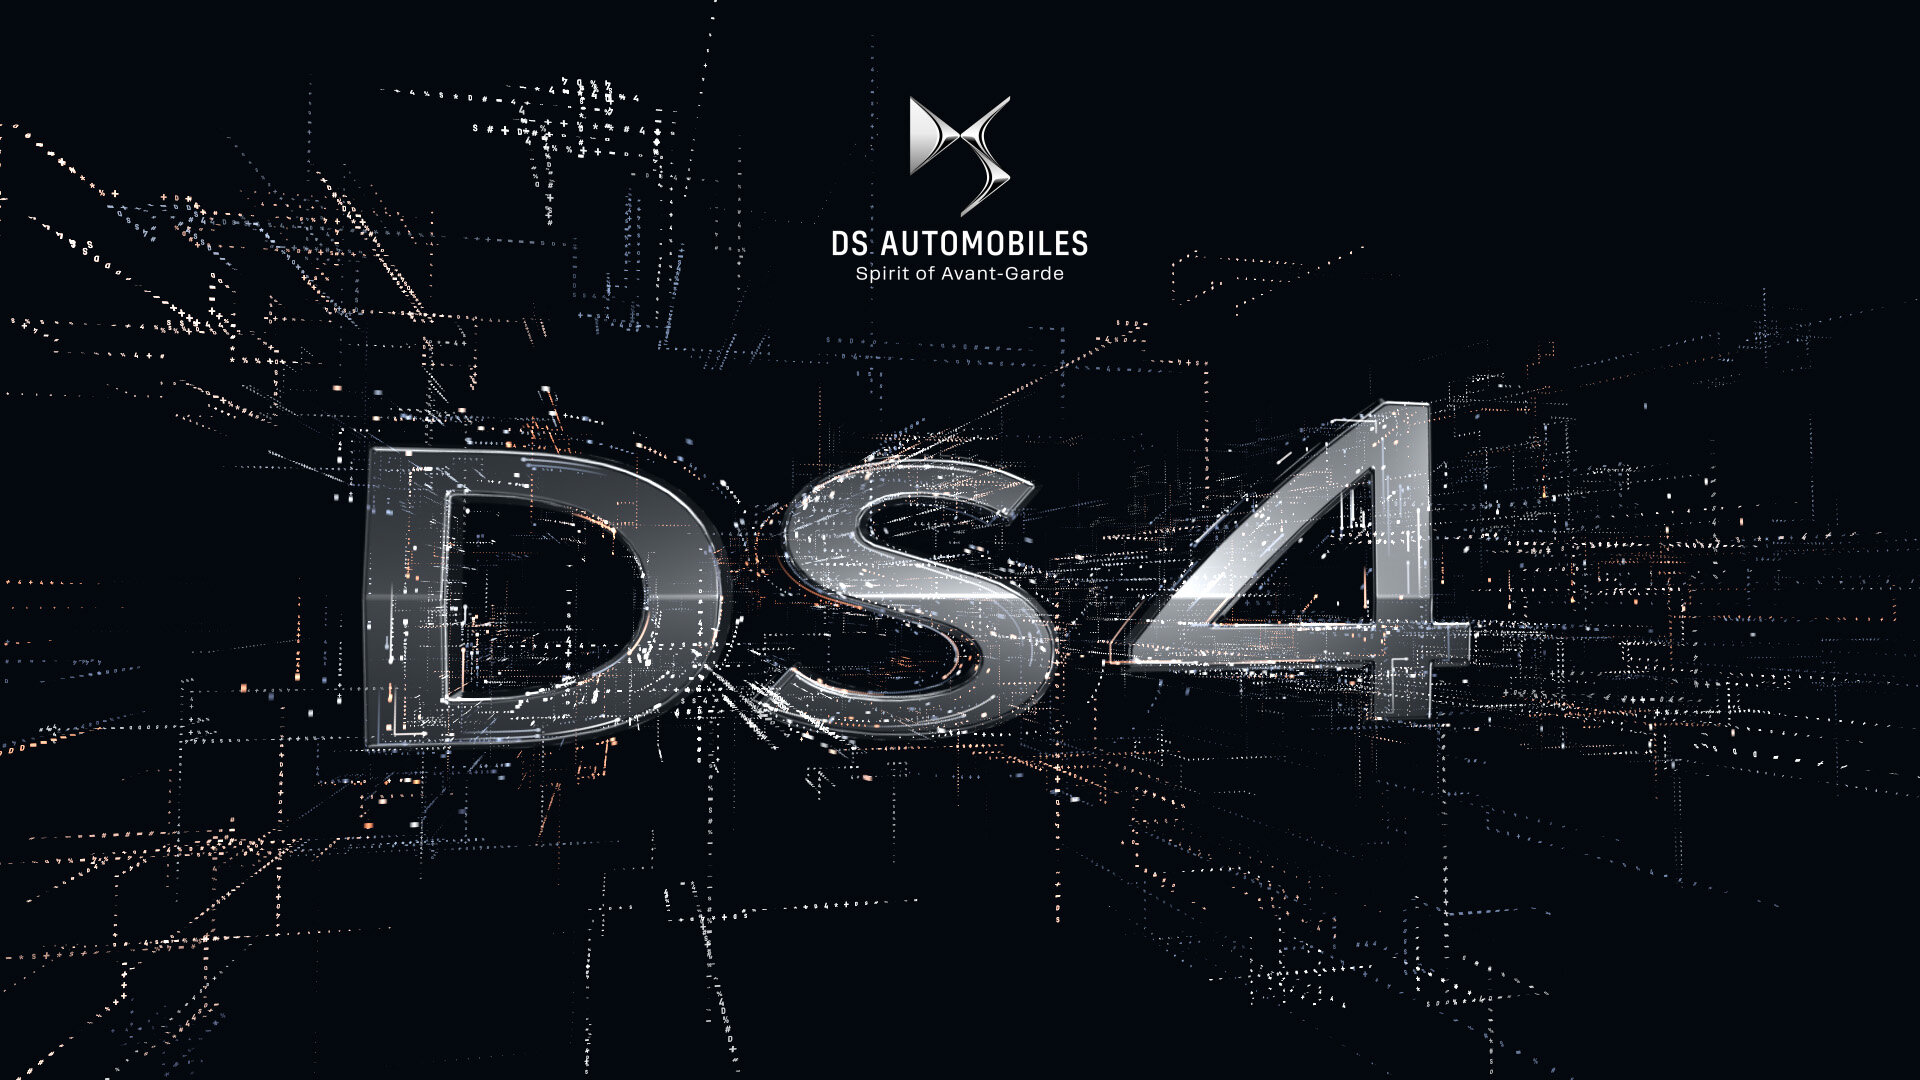 DS 4 bude brzy představen v celé své kráse a praktičnosti